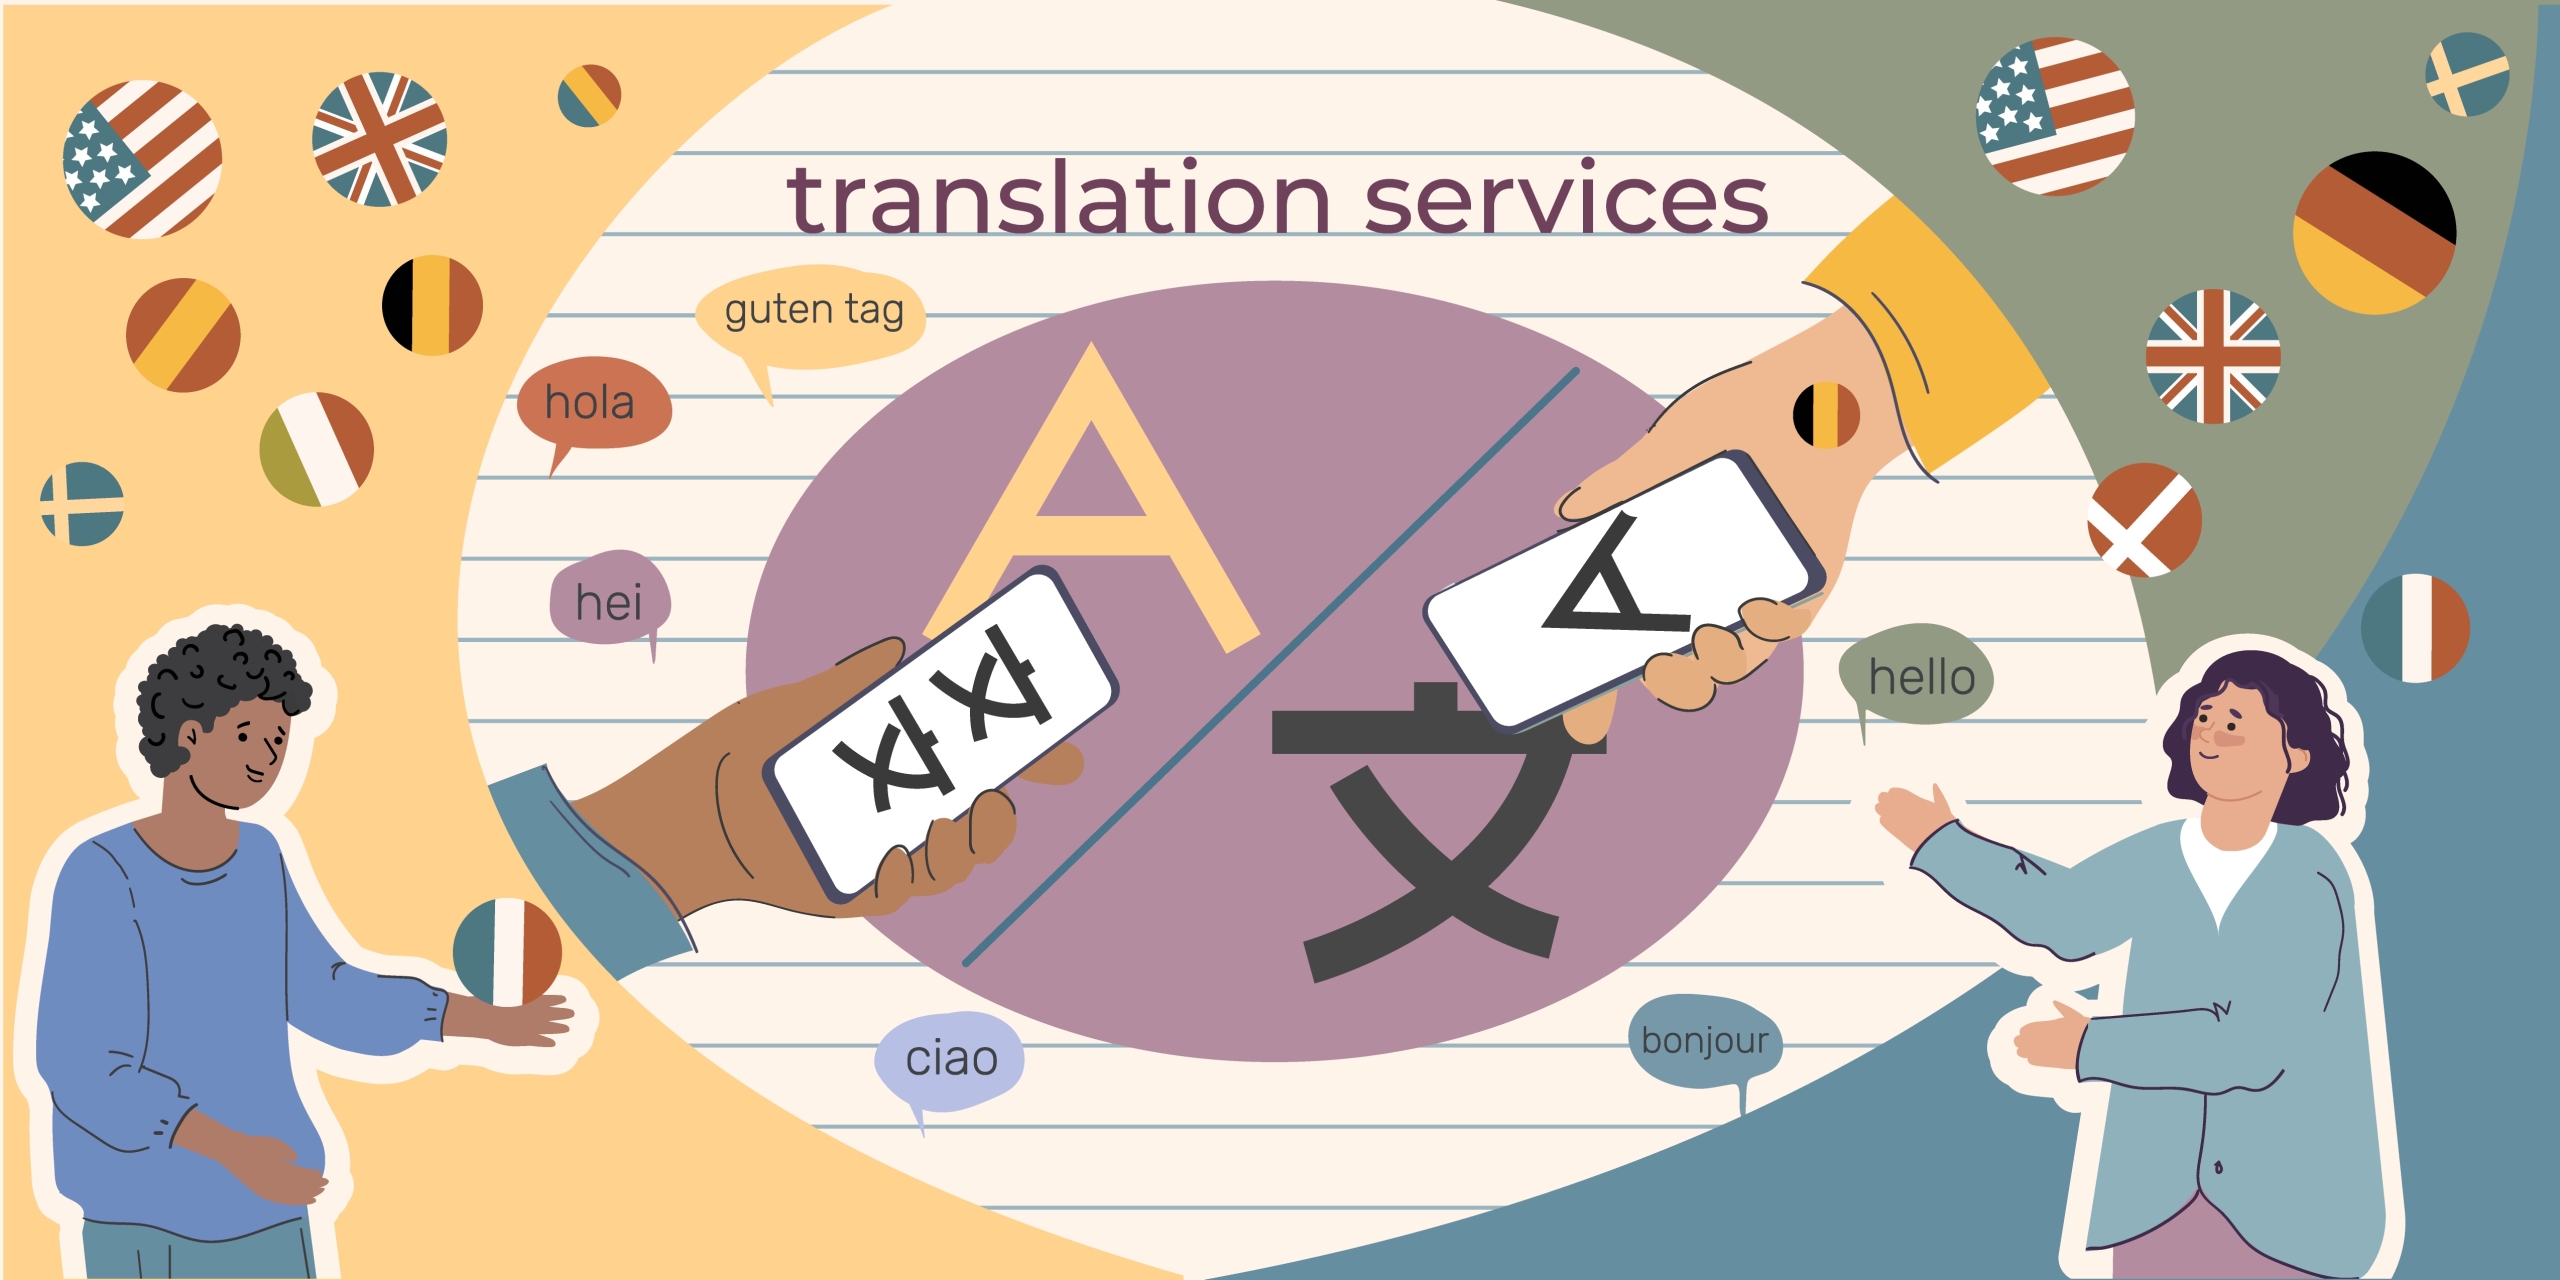 Le combinazioni linguistiche più tradotte al mondo. Esistono molteplici servizi di traduzione disponibili per una varietà di esigenze e contesti.